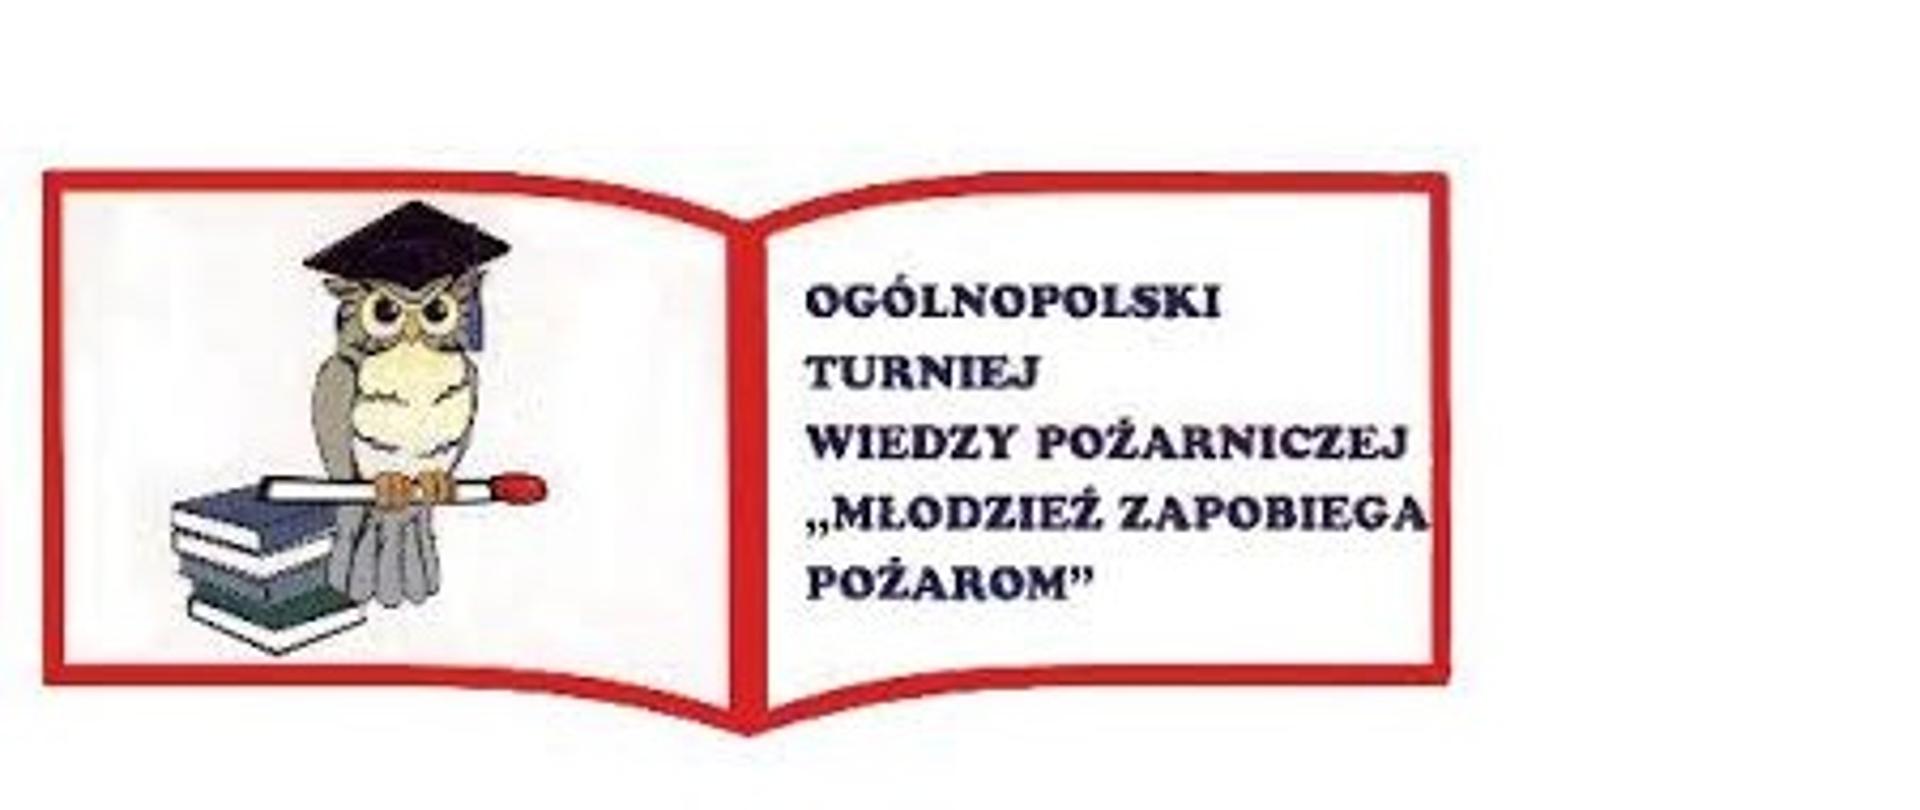 Zdjęcie przedstawia Logo Ogólnopolskiego Turnieju Wiedzy Pożarniczej na którym znajduje się sowa na tle książki i napis turnieju.